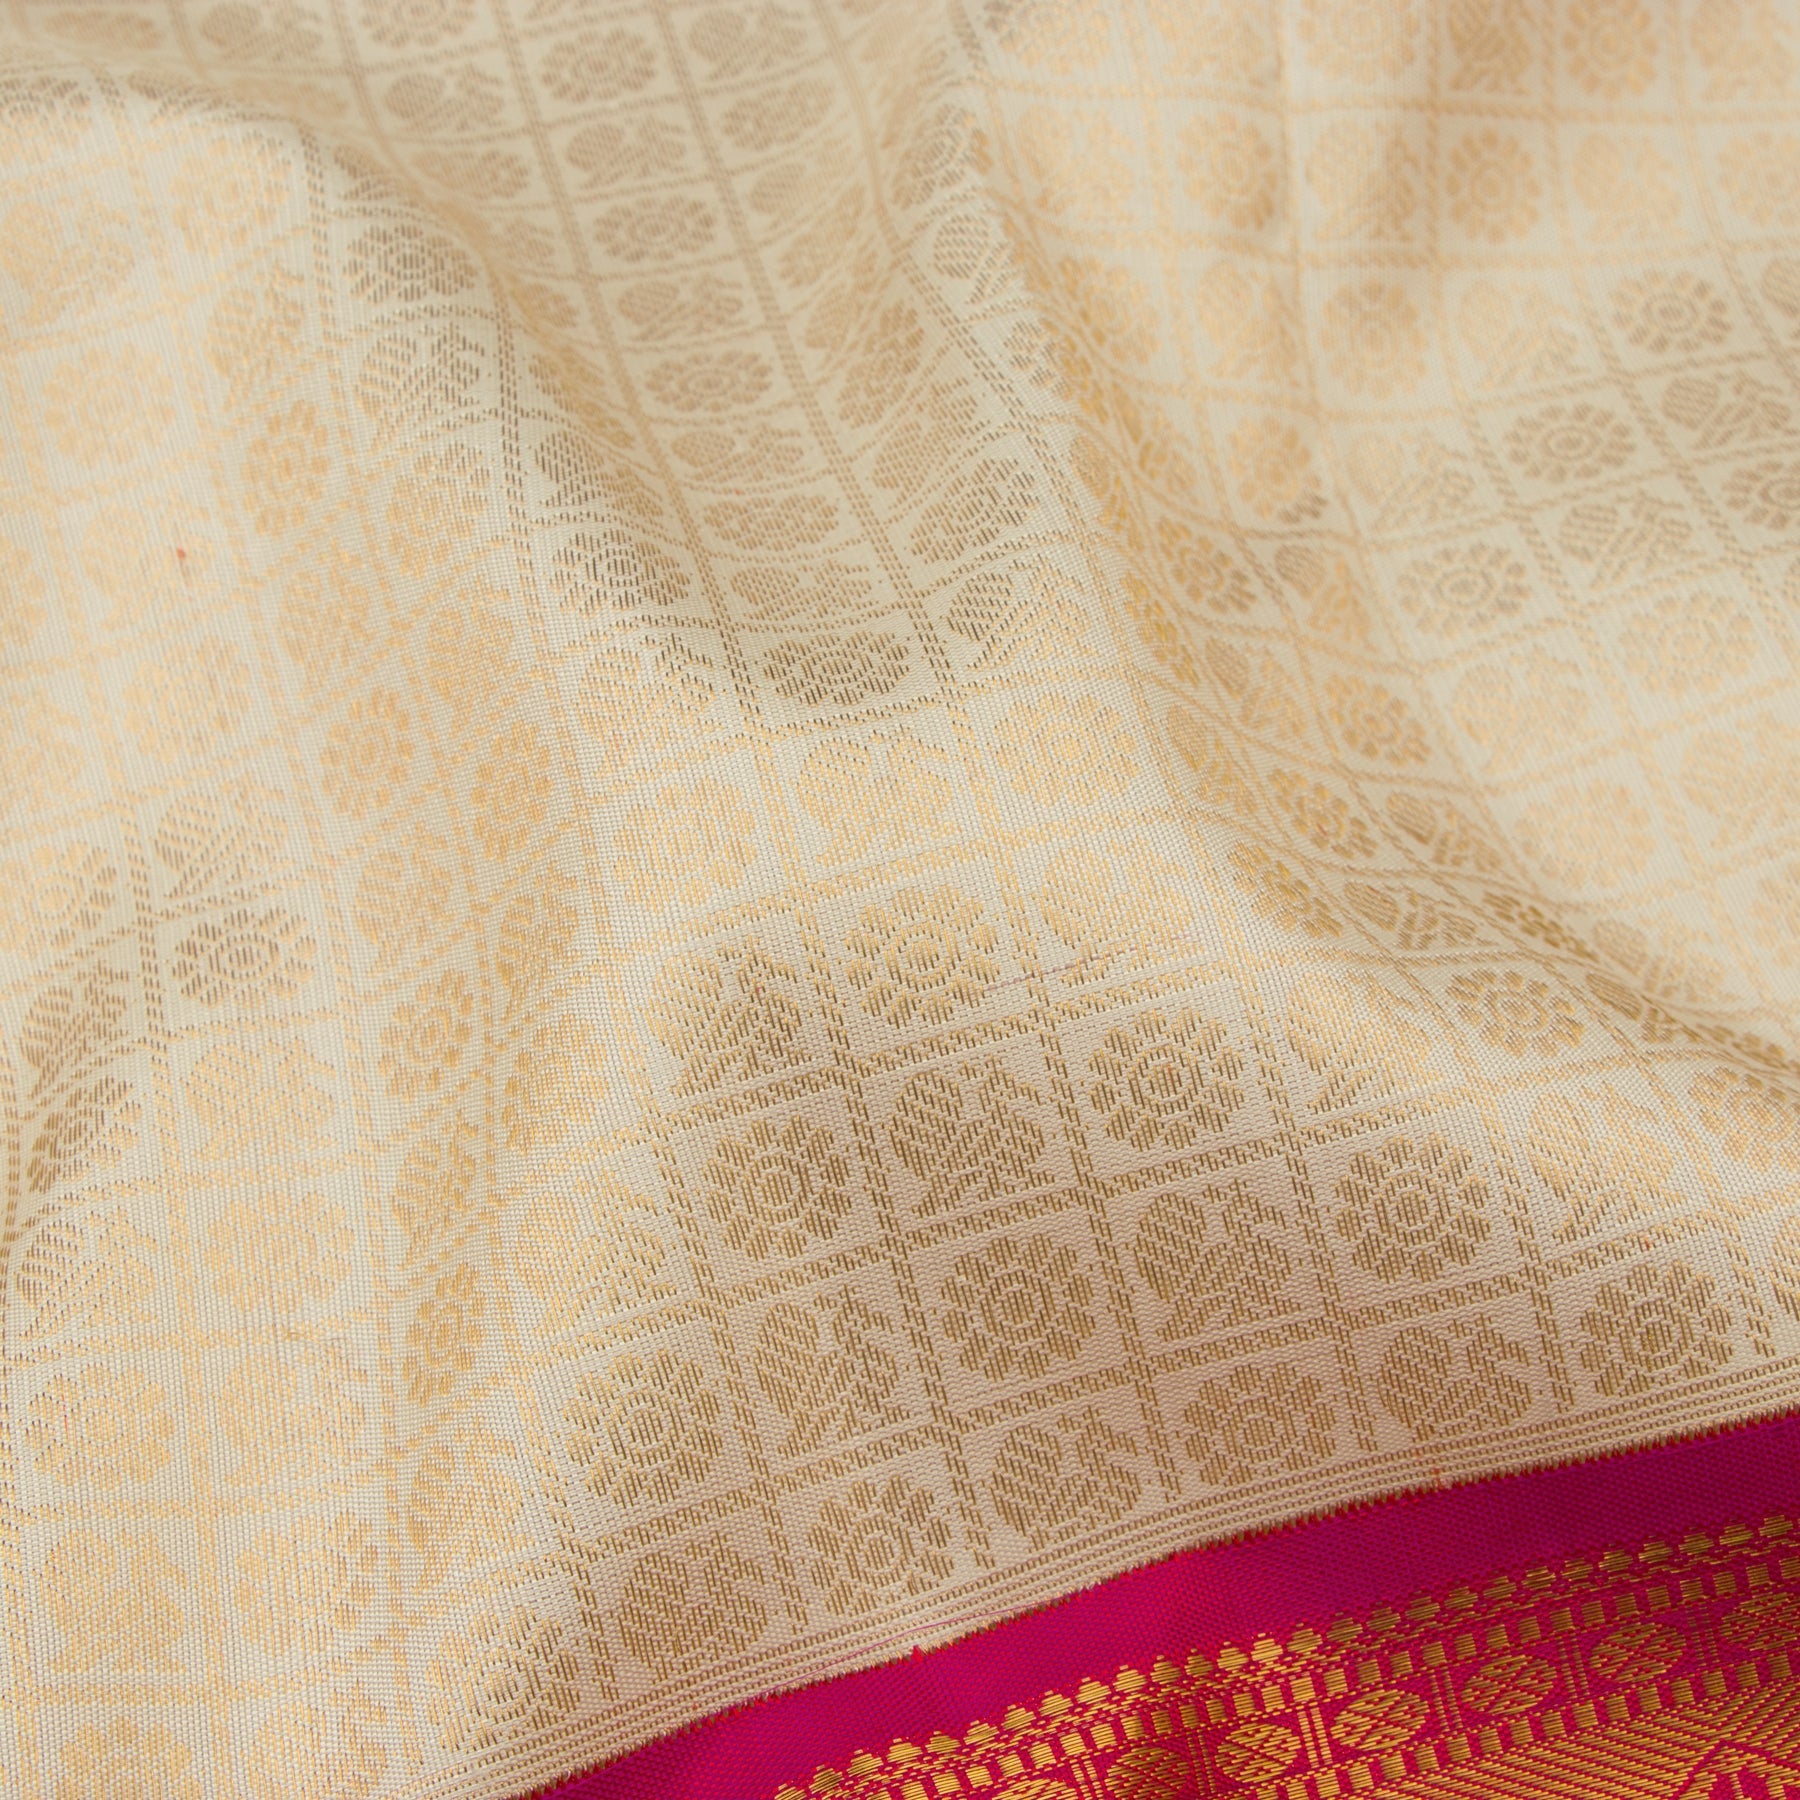 Kanakavalli Kanjivaram Silk Sari 22-110-HS001-13950 - Fabric View